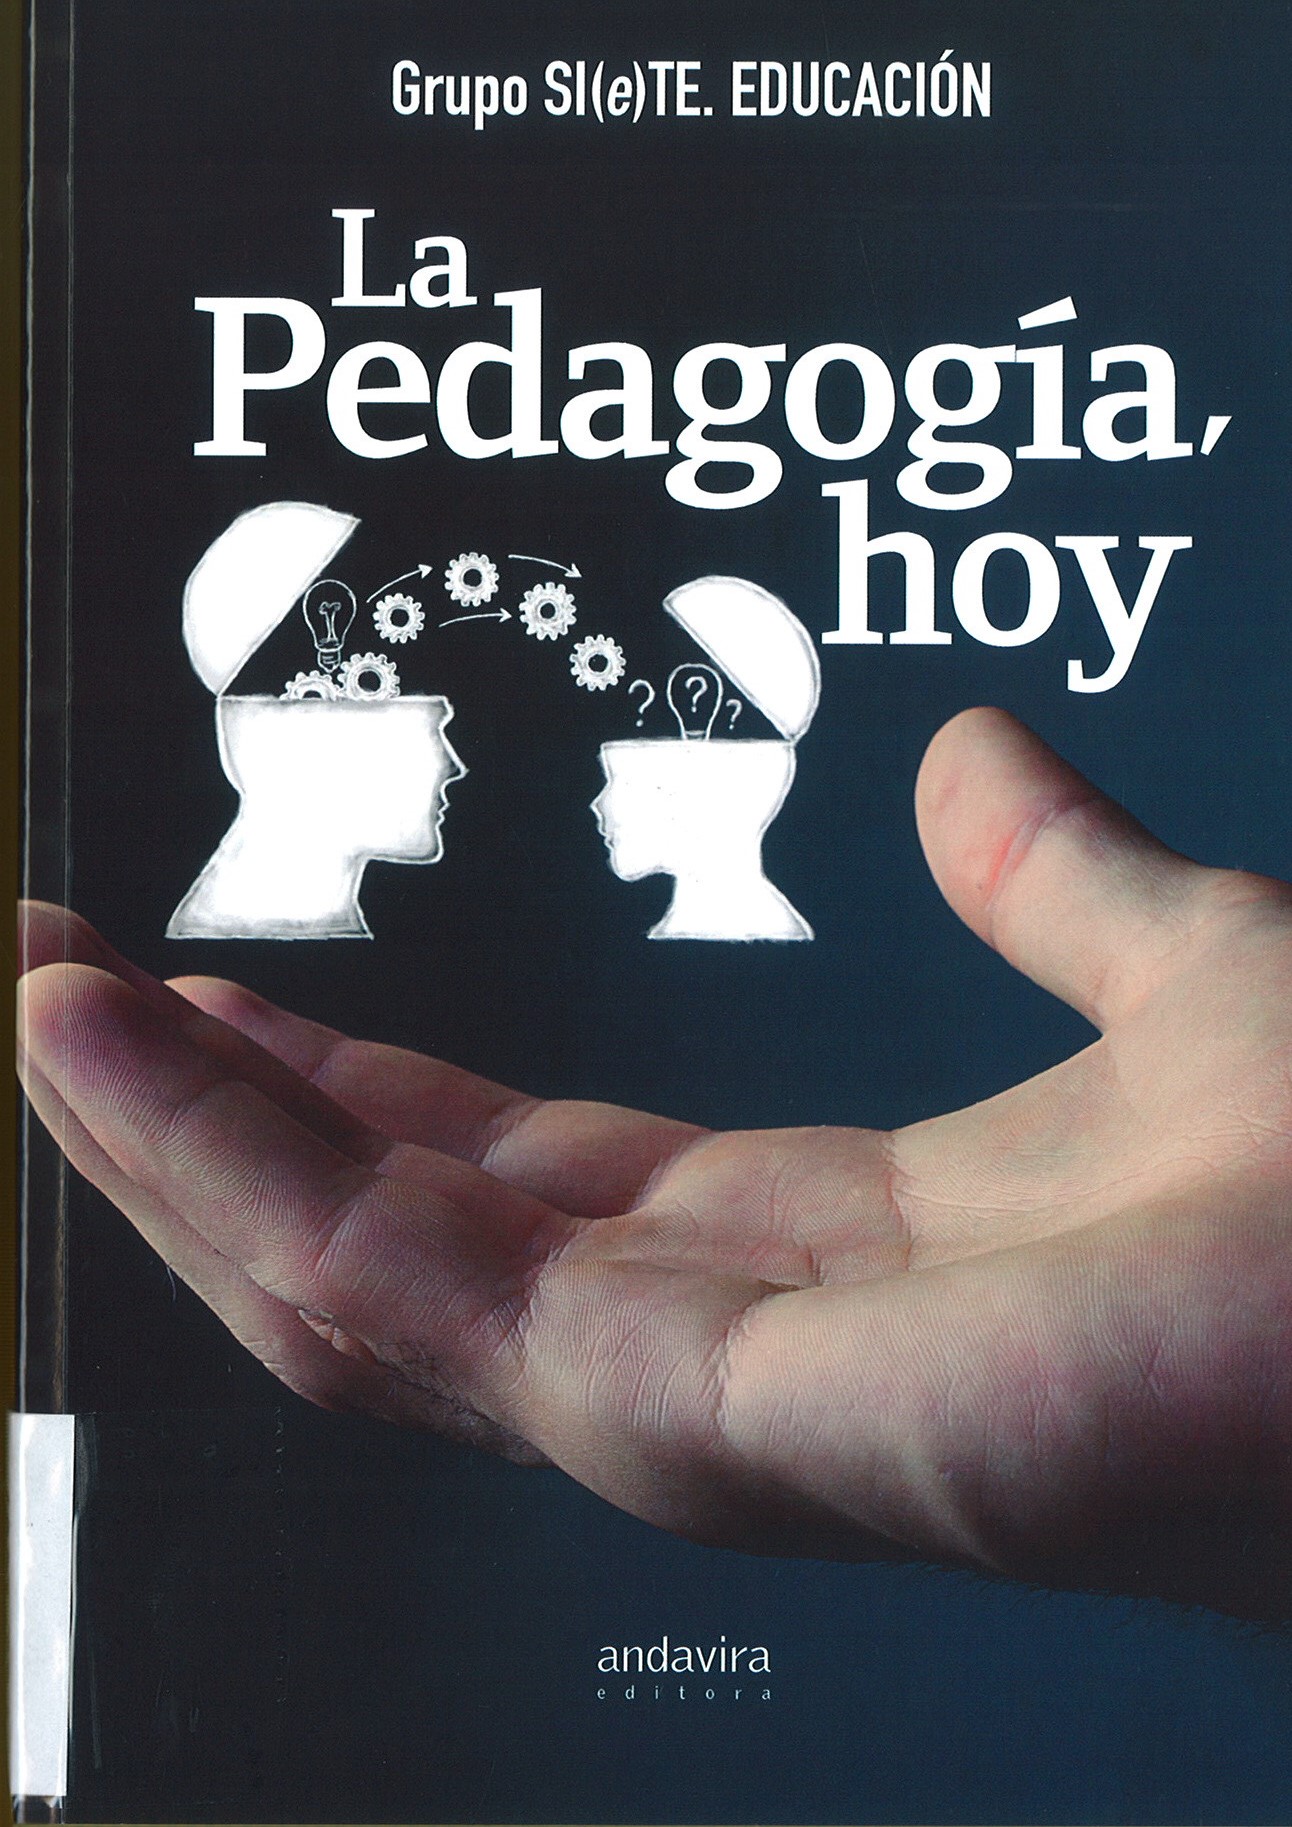 Imagen de portada del libro La pedagogía, hoy